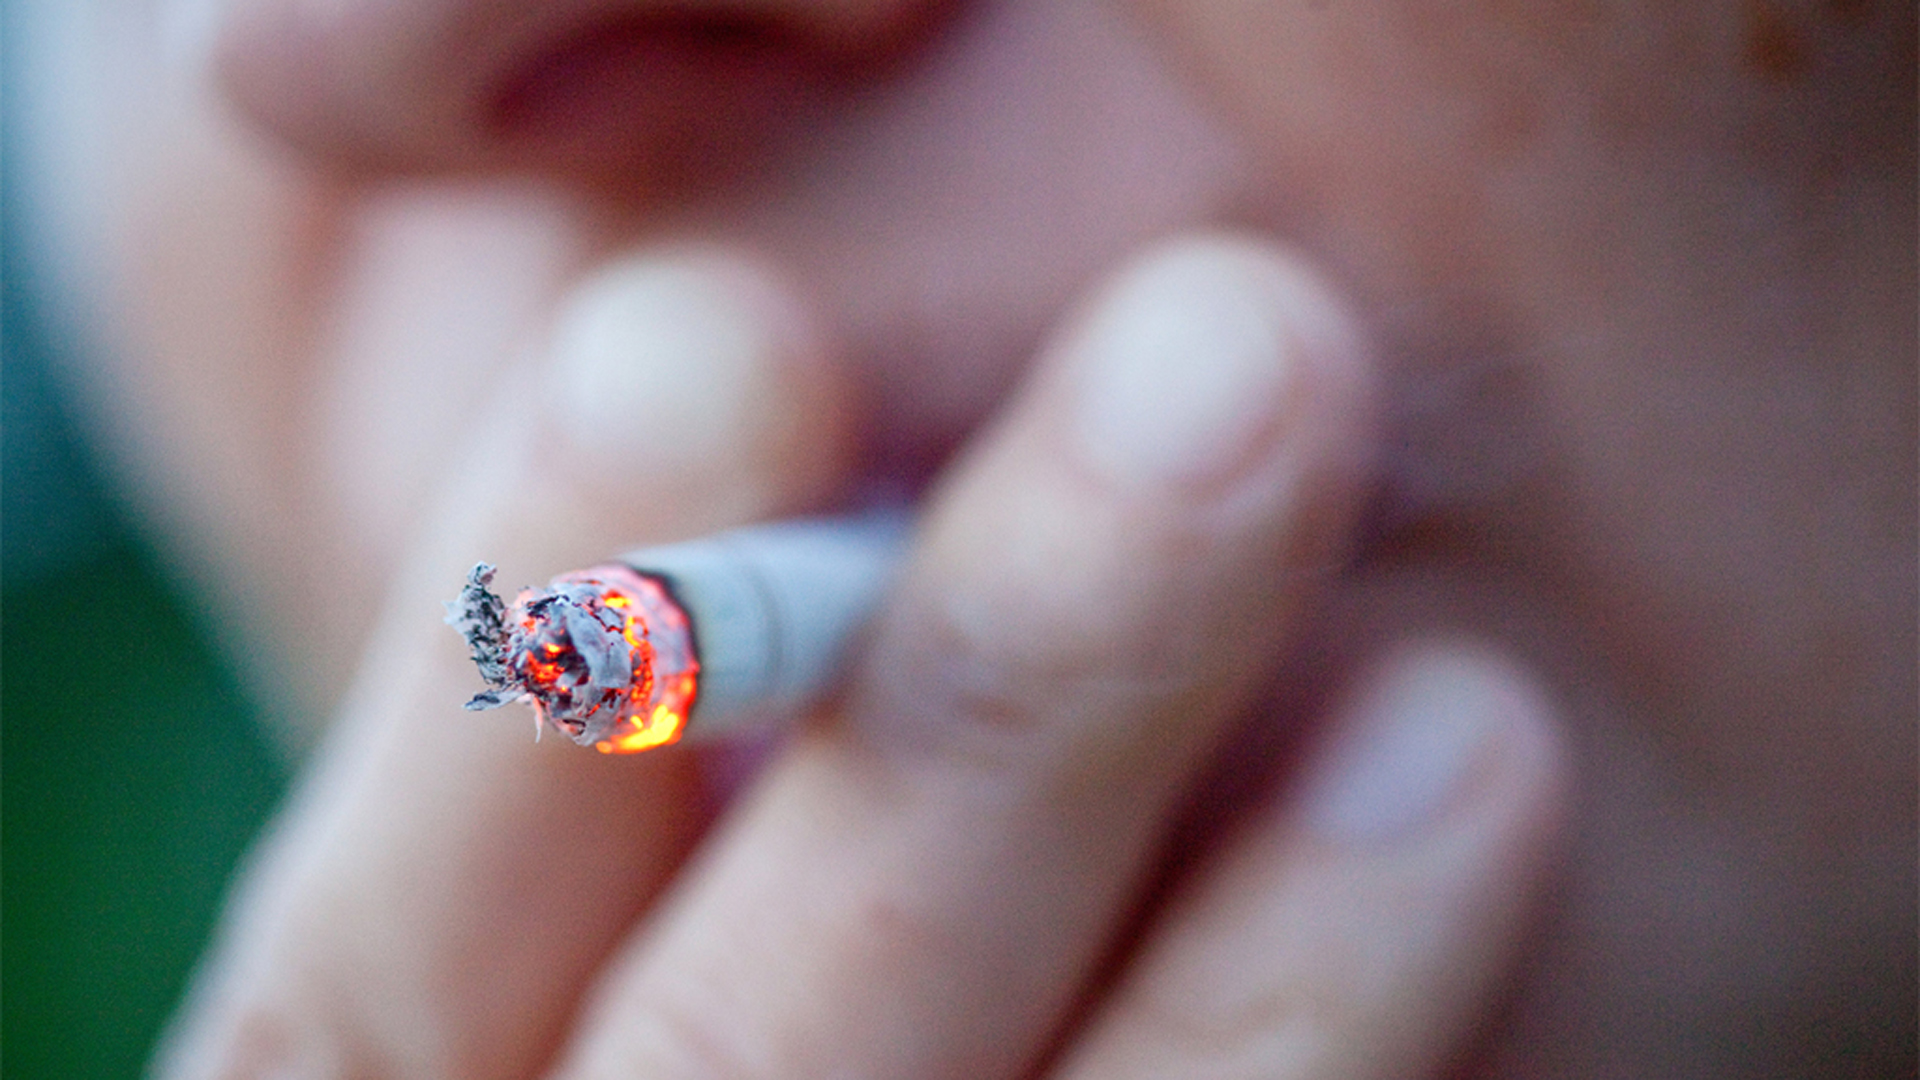 Silhouette eines Rauchers, der sich eine Zigarette anzündet. | dpa